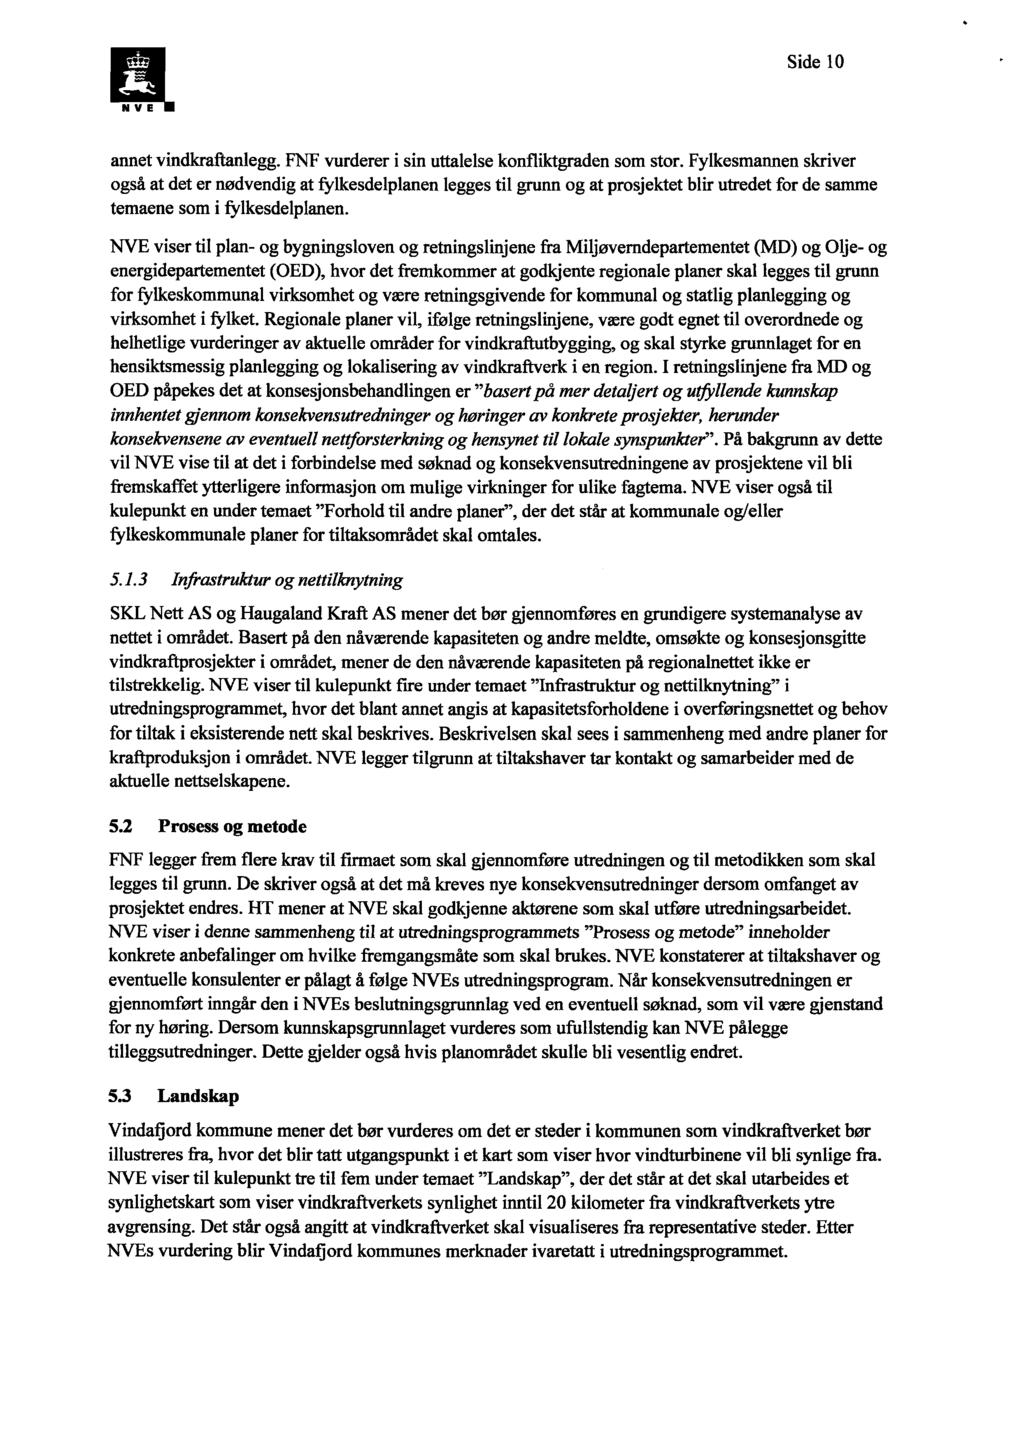 Side 10 N V E annet vindkraftanlegg. FNF vurderer i sin uttalelse konfliktgraden som stor.